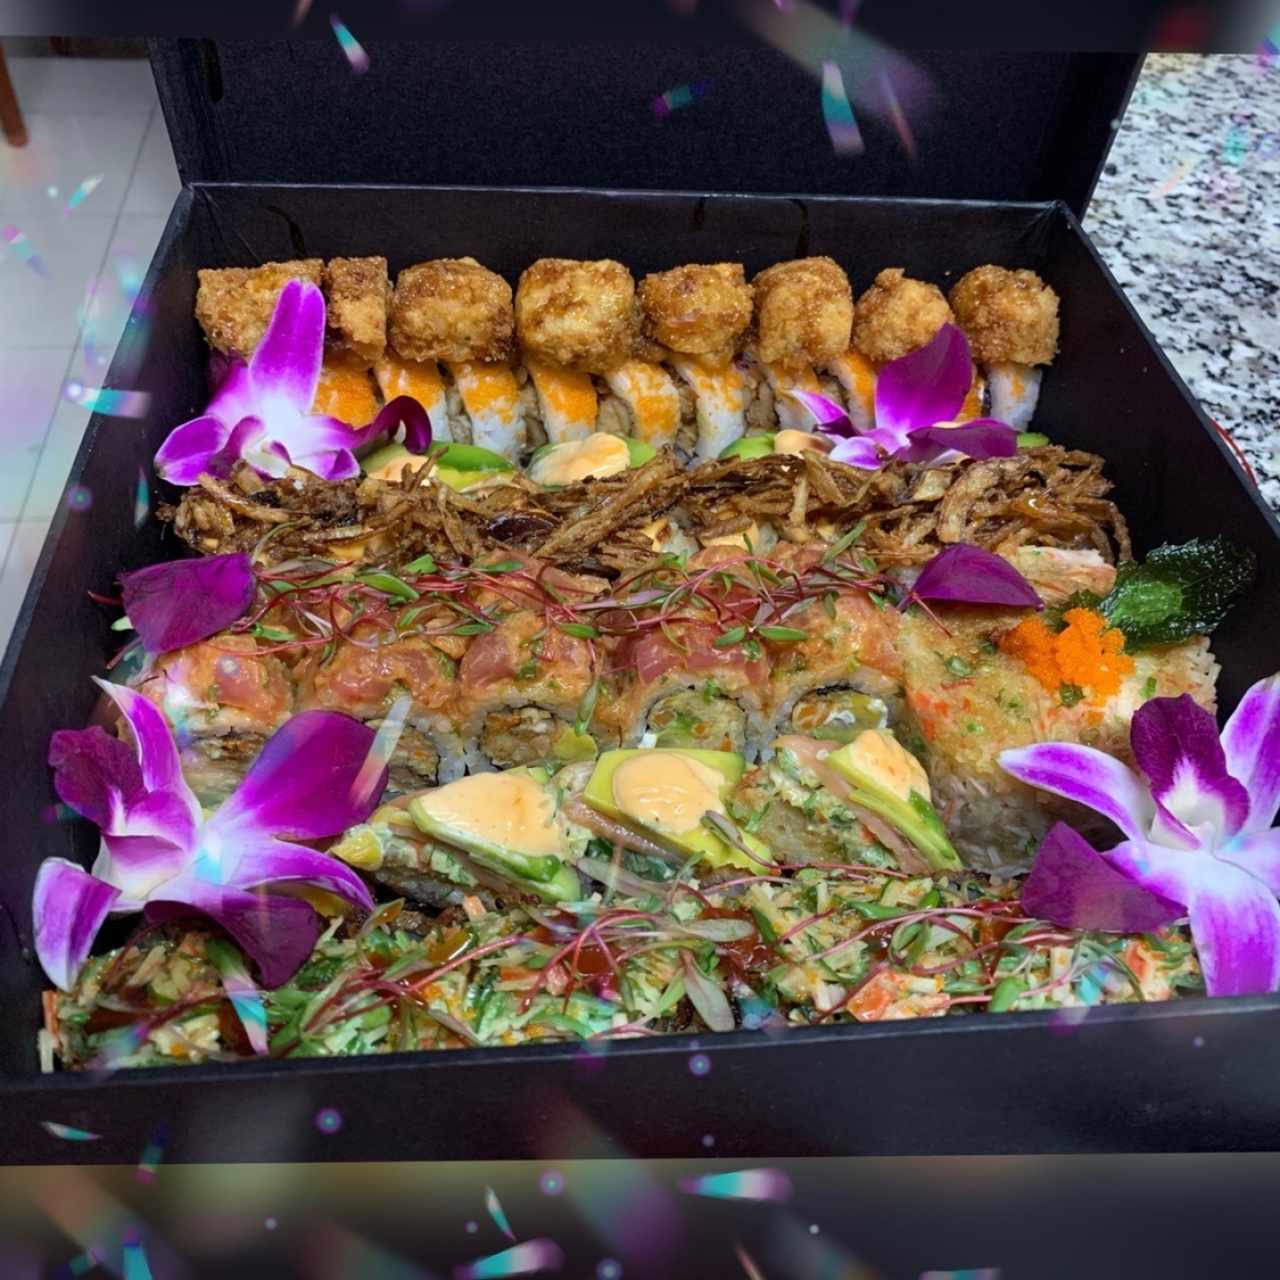 Shosai Box con Sushis variados